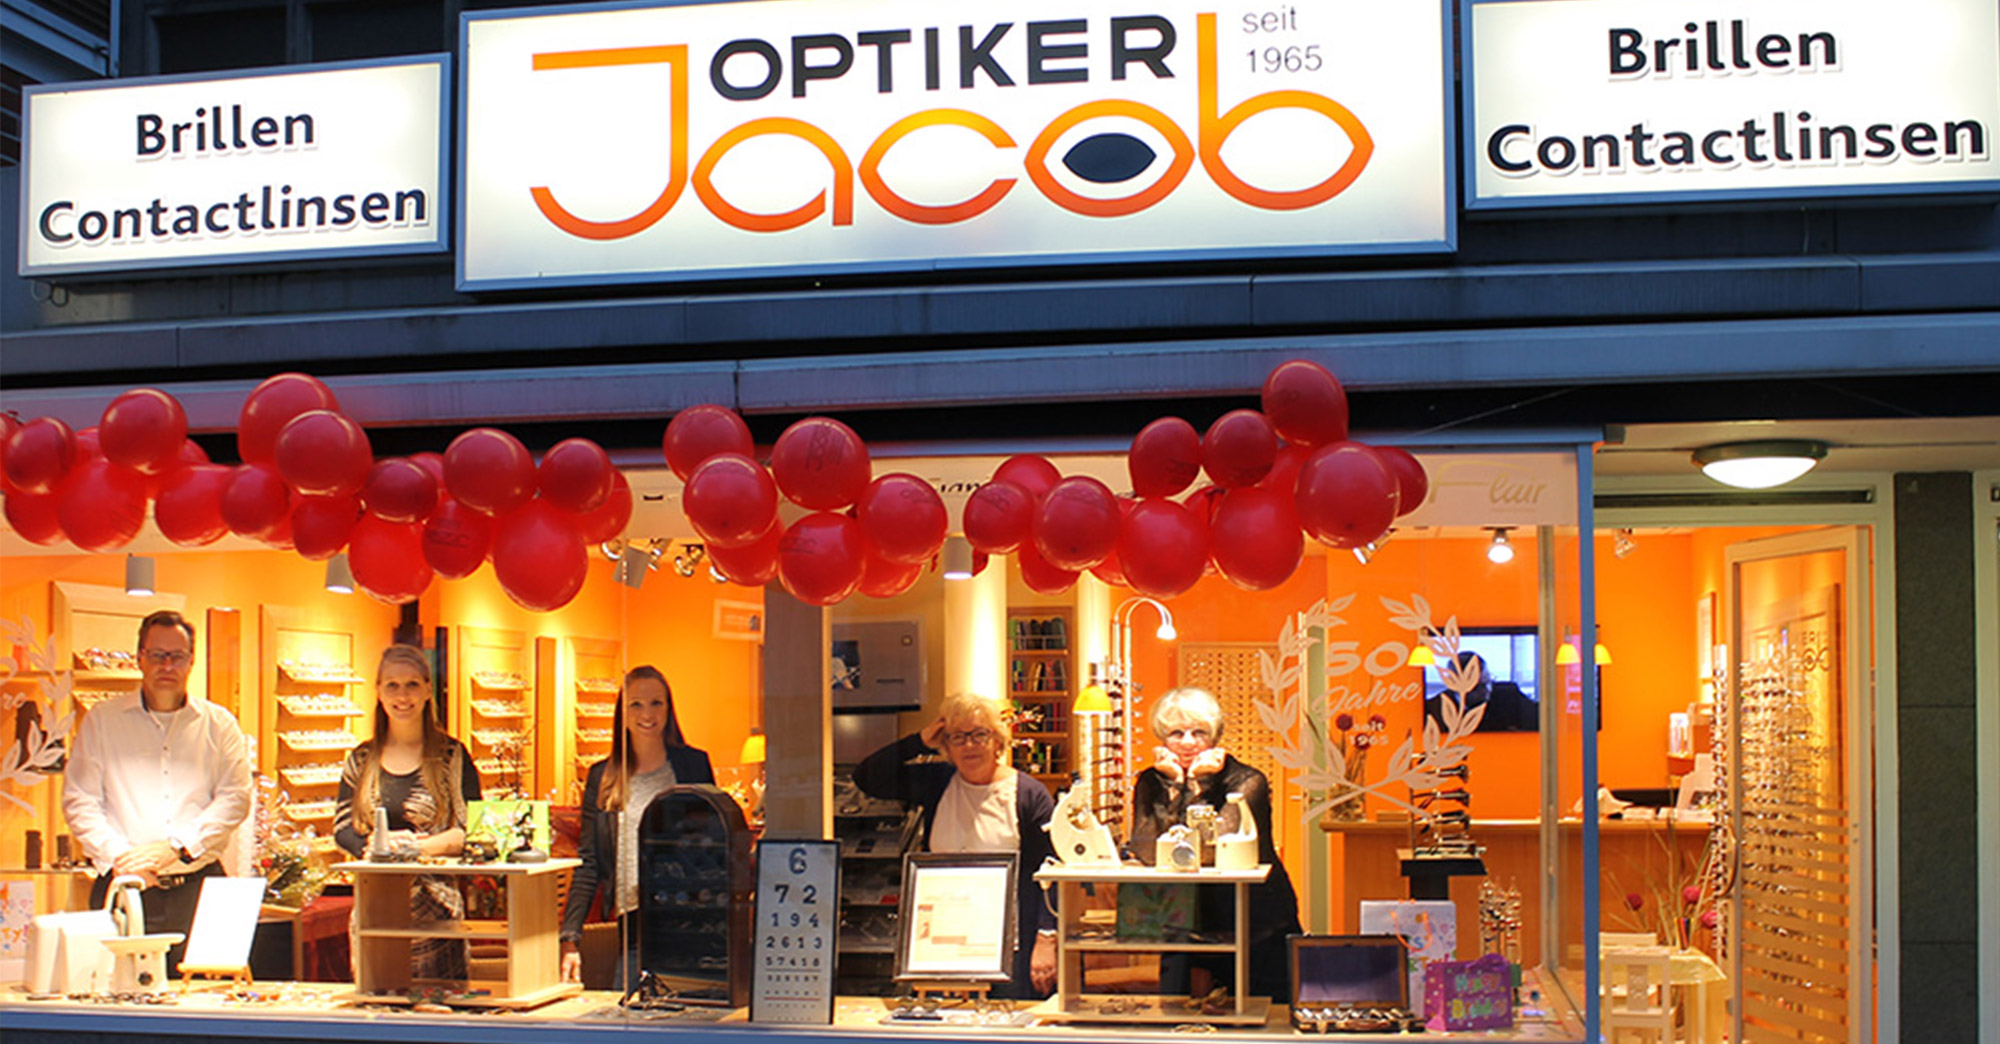 Optiker Jacob GmbH - Aktuelles